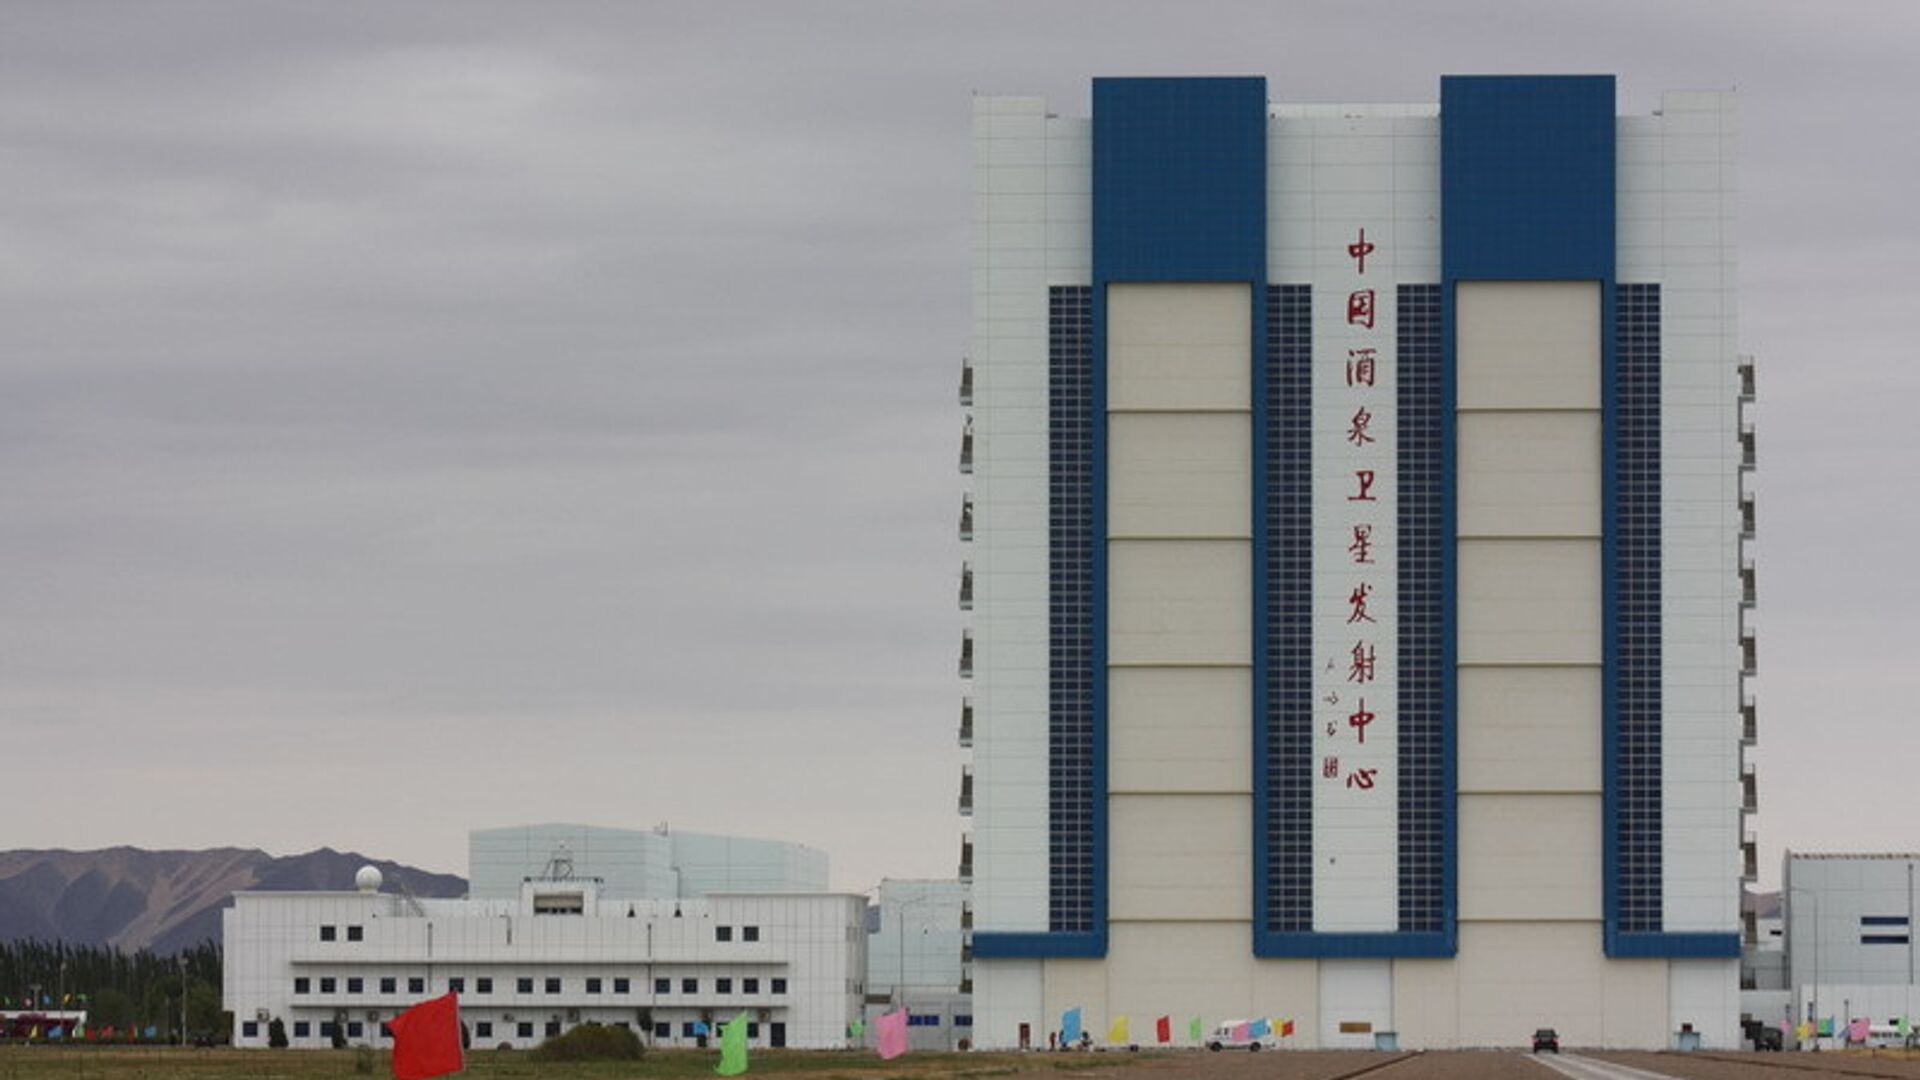 Китай запустил пилотируемый космический корабль 